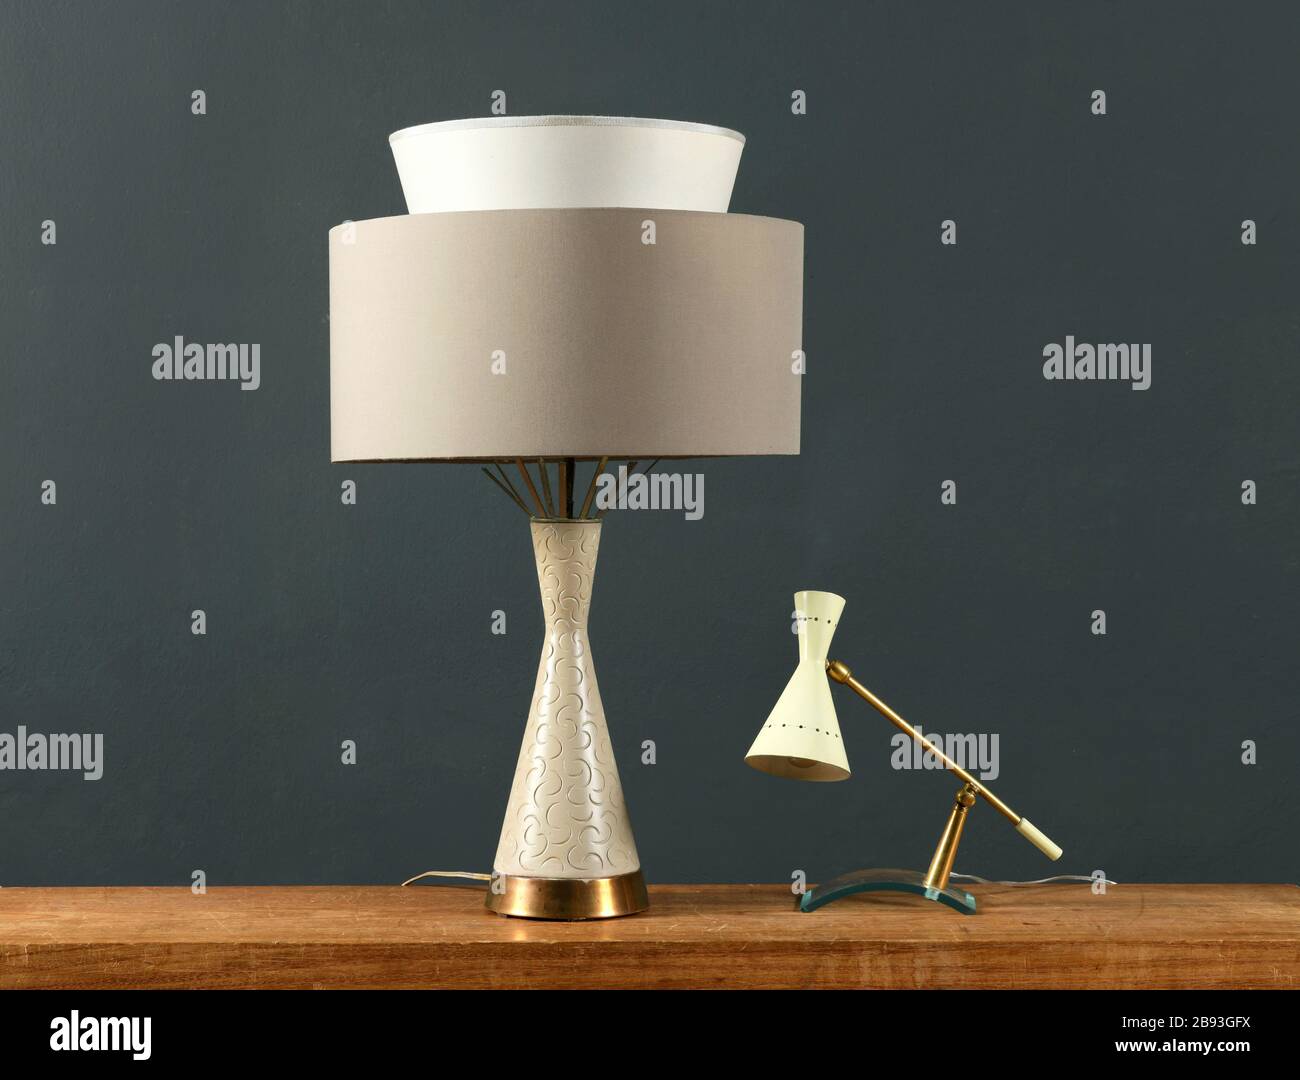 Due lampade vintage su un mobile in legno, una cilindrica con base angolare e ombra e una piccola lampada ad angolo contro una parete grigio scuro Foto Stock